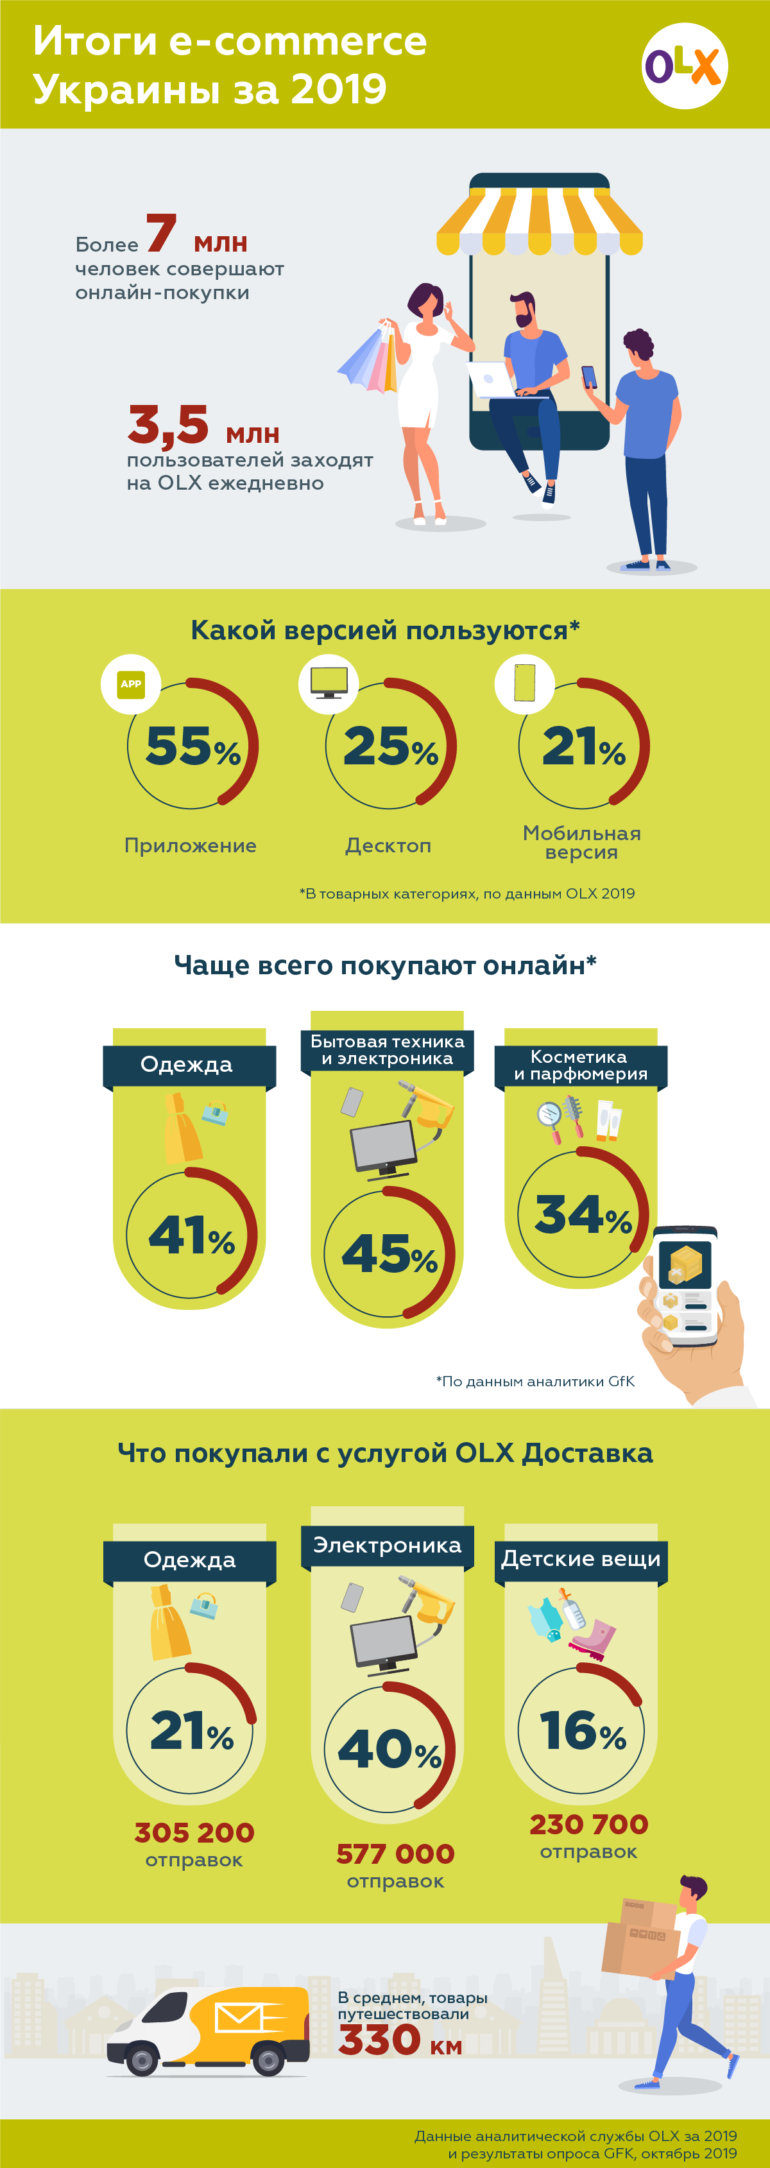 Исследование GfK и OLX: Украинцы чаще всего покупают в онлайне электронику, бытовую технику, одежду и парфюмерию [инфографика]